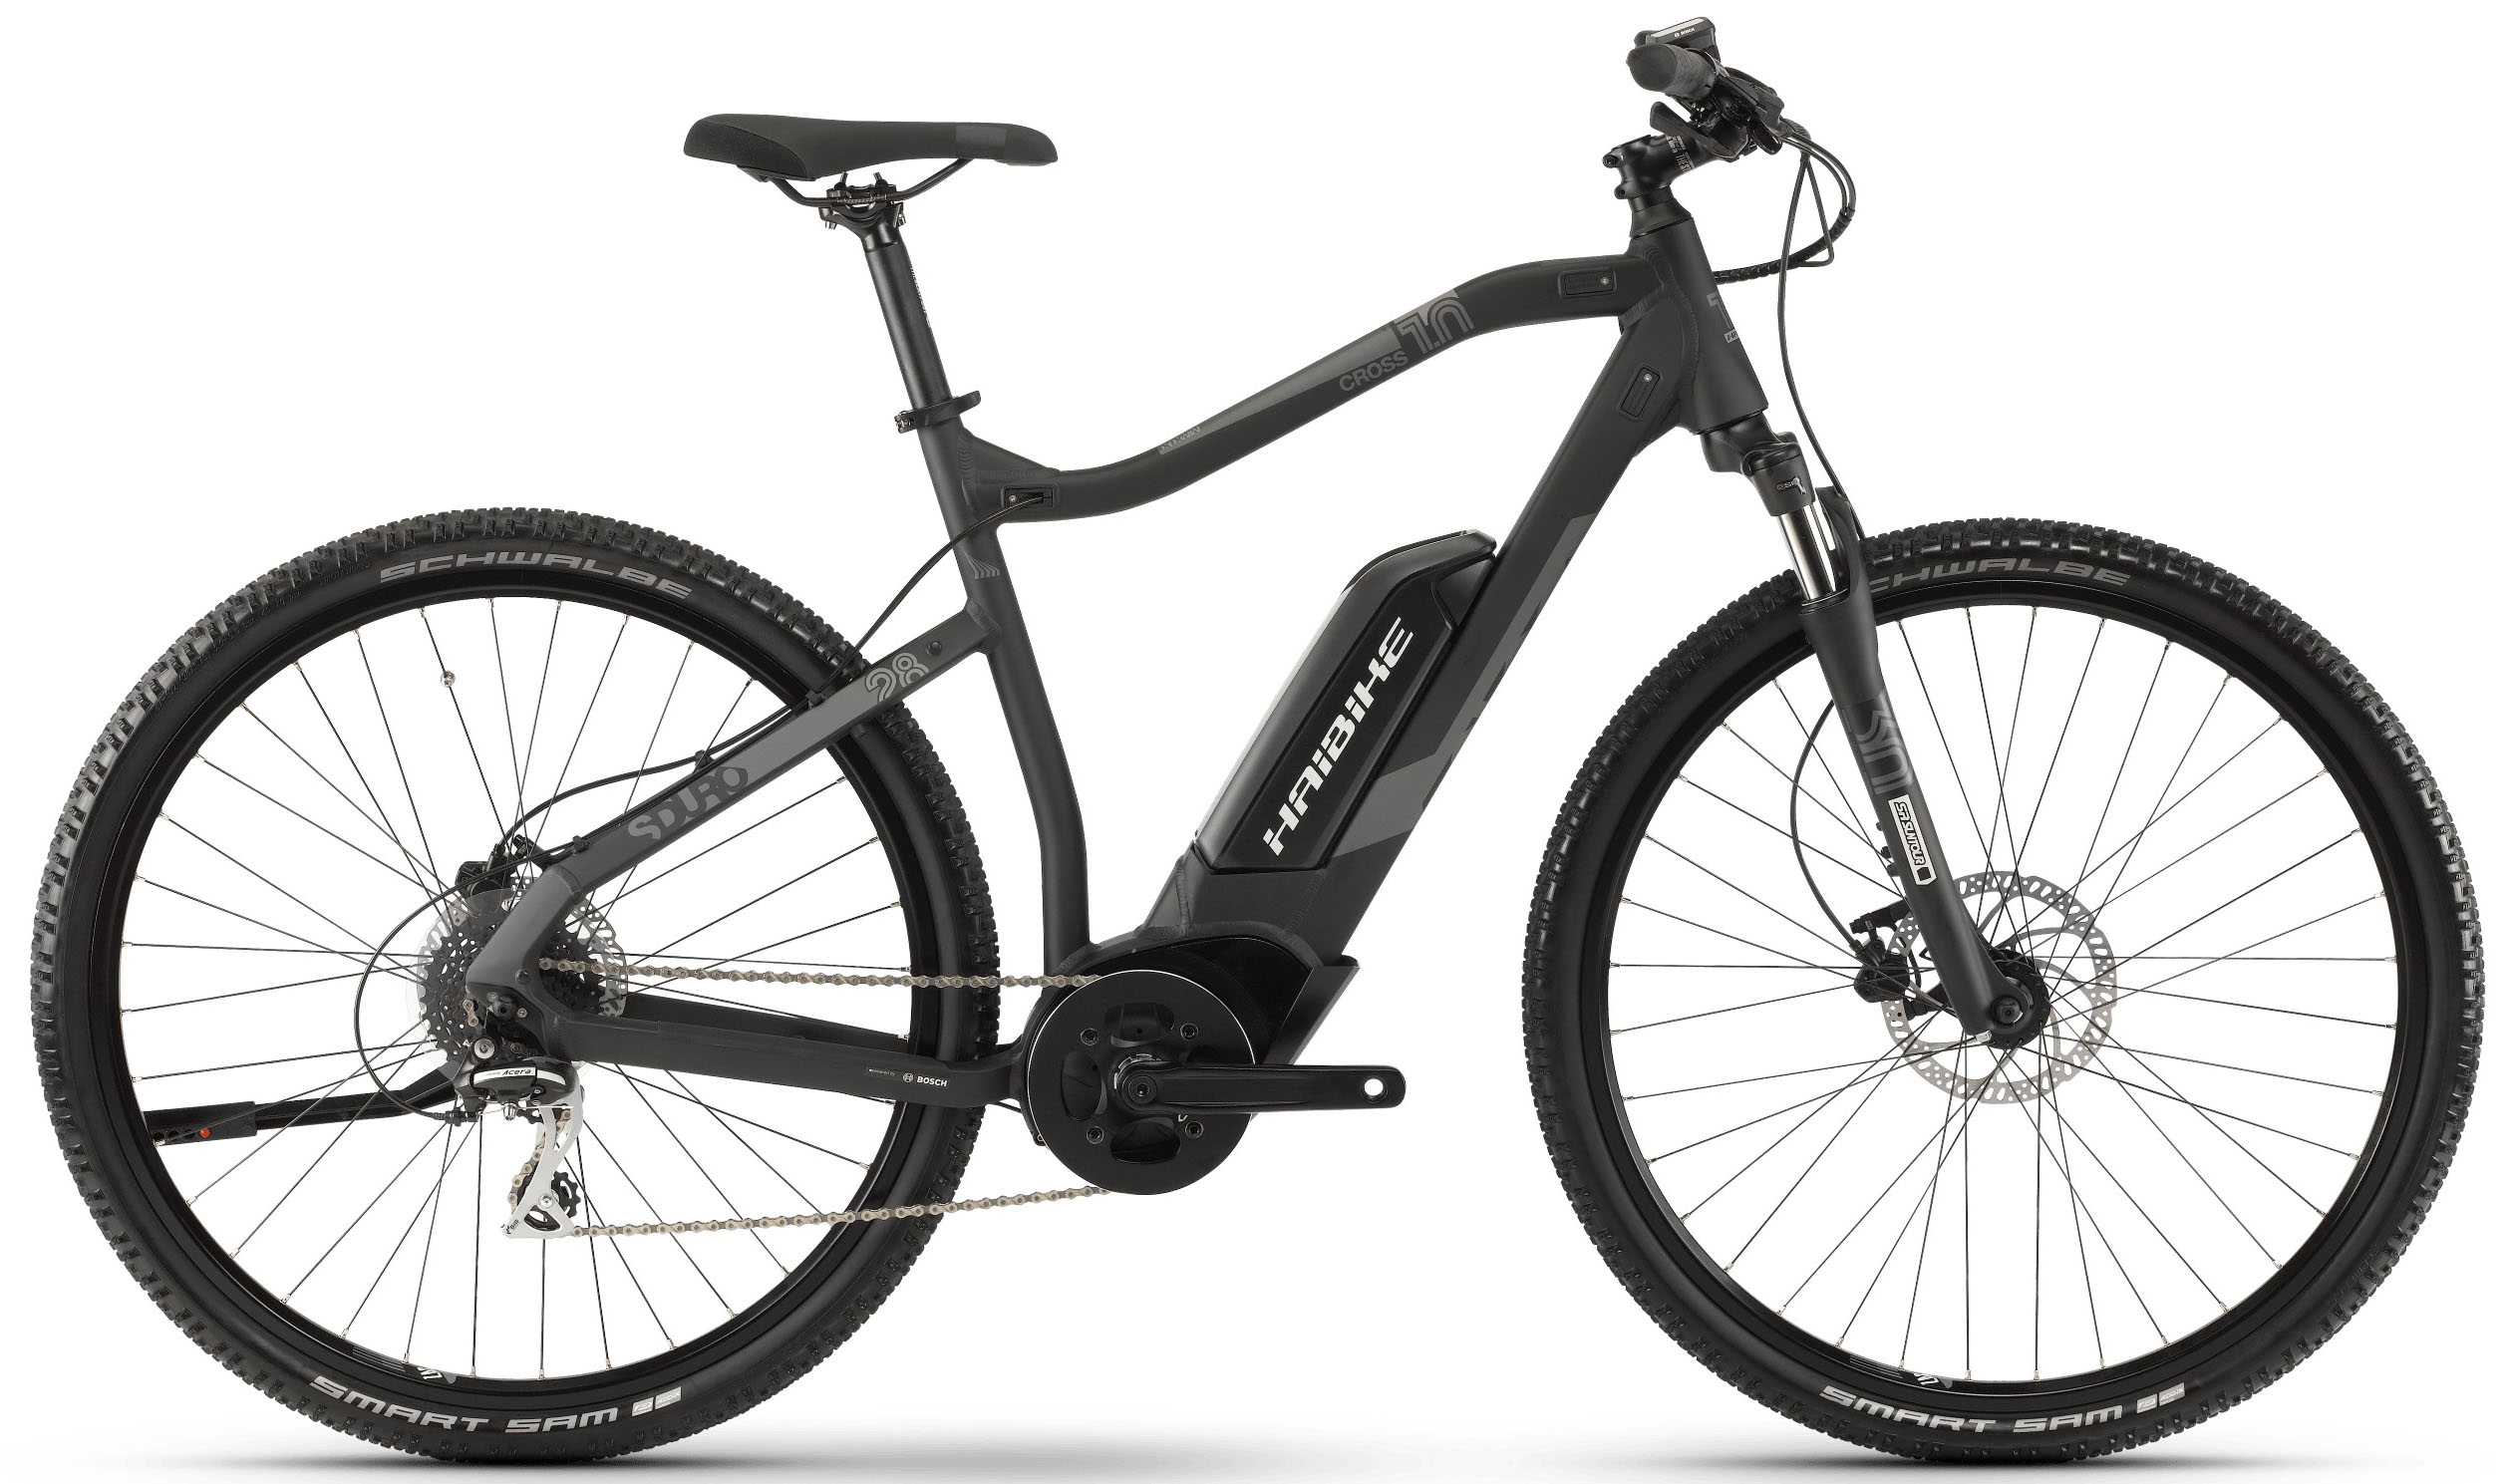  Отзывы о Электровелосипеде Haibike SDURO Cross 1.0 Herren 400Wh 8-G Acera 2019